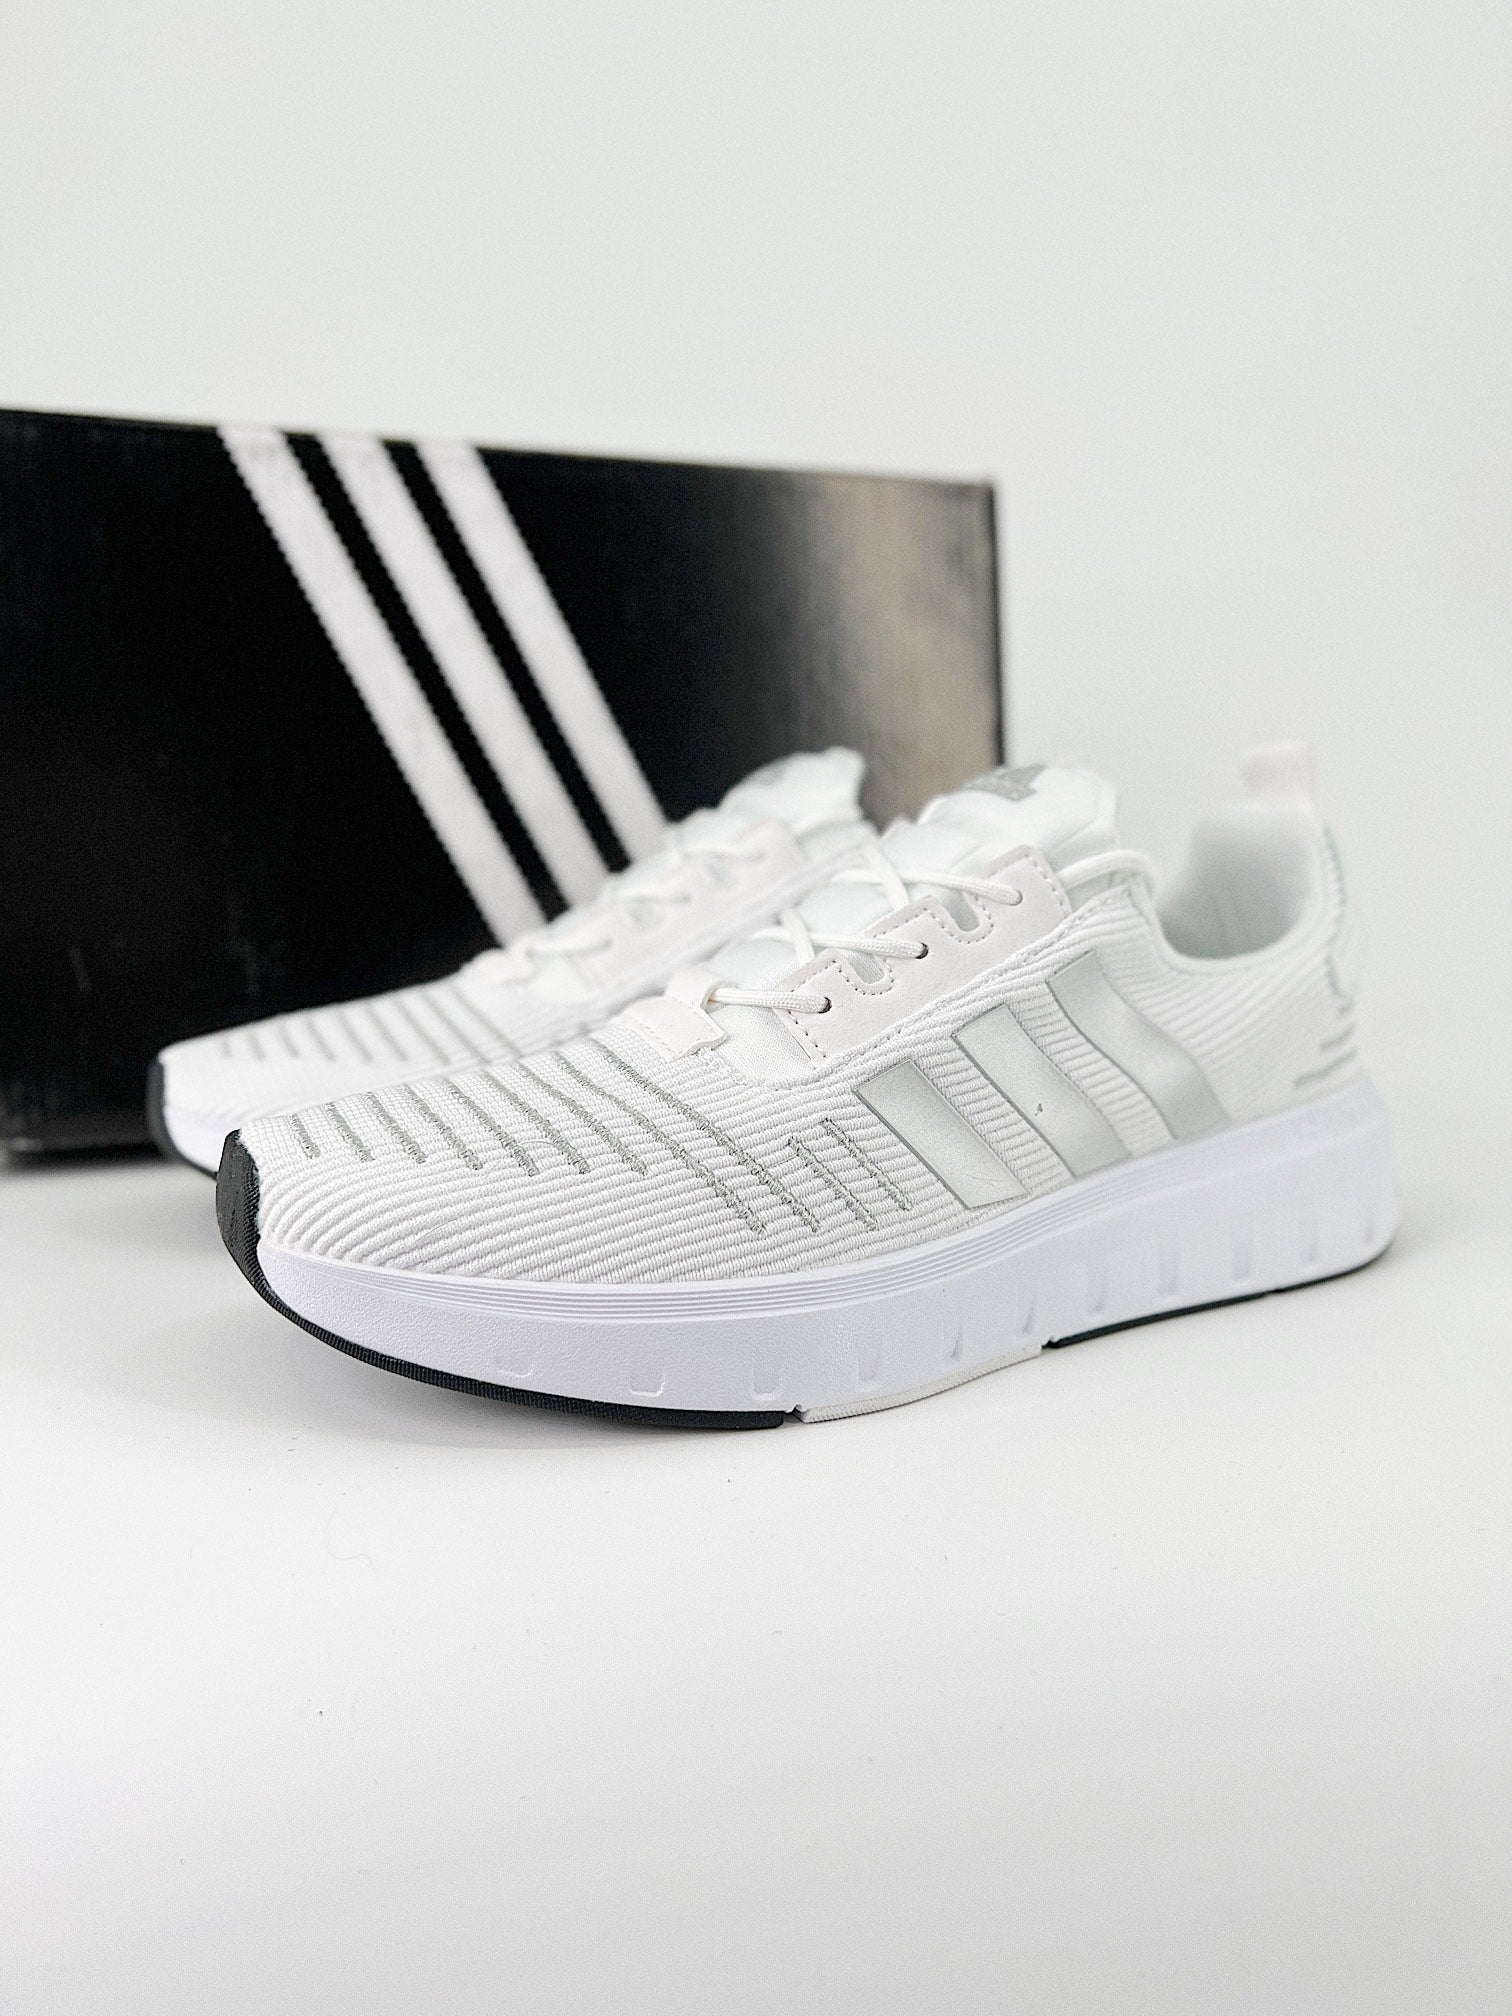 Adidas RUN swift white